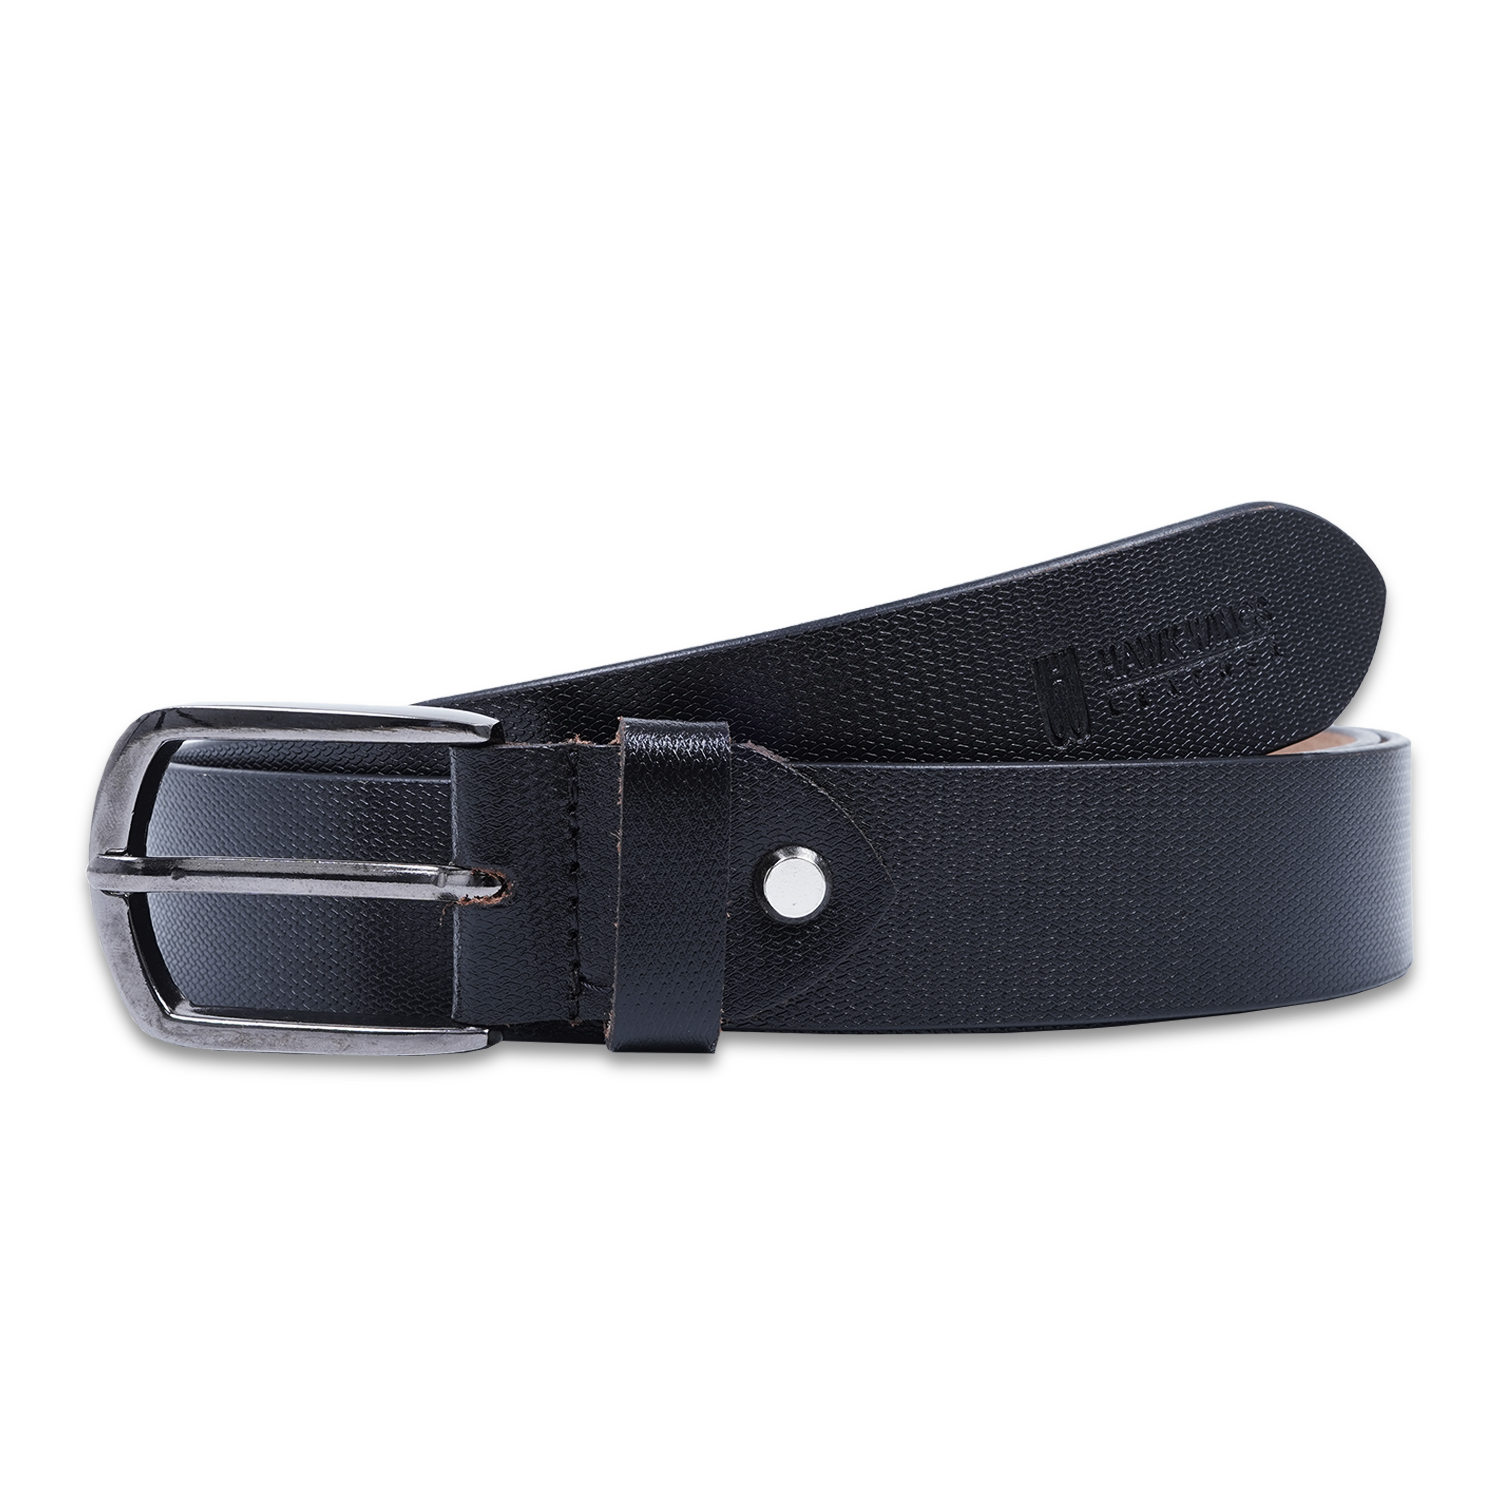  Genuine Leather belt |Formal Belt | Black-asset-266